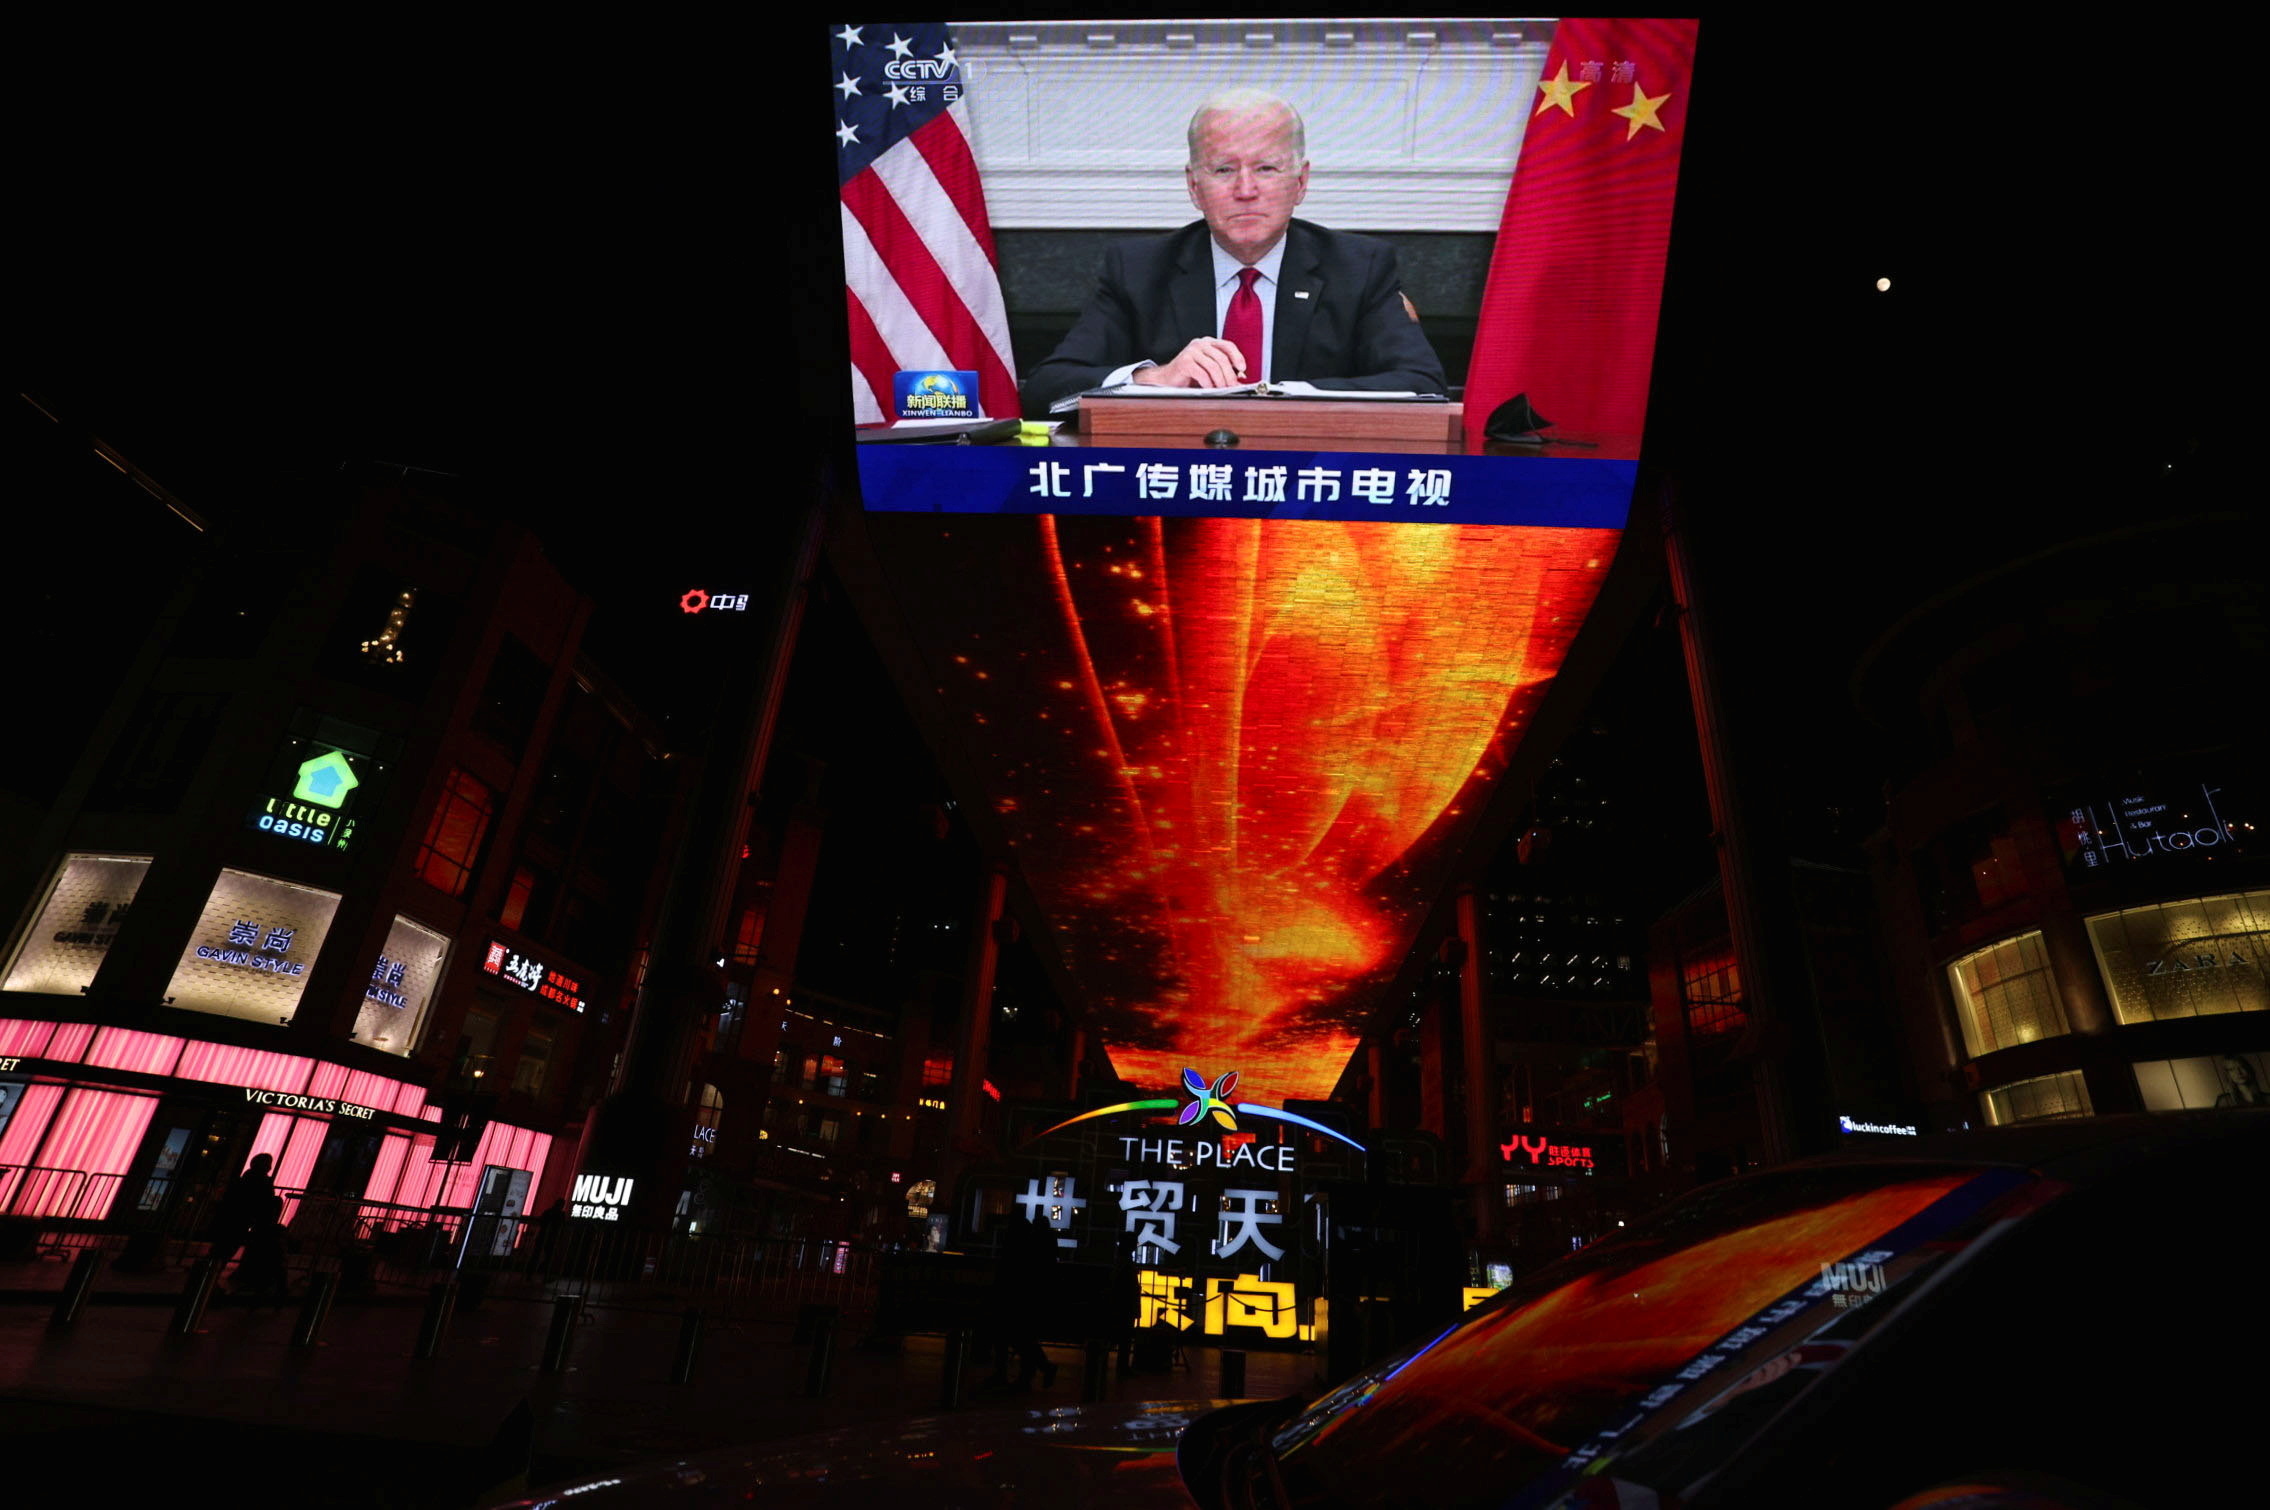 Una pantalla muestra a Joe Biden durante su reunin con Xi Jinping.